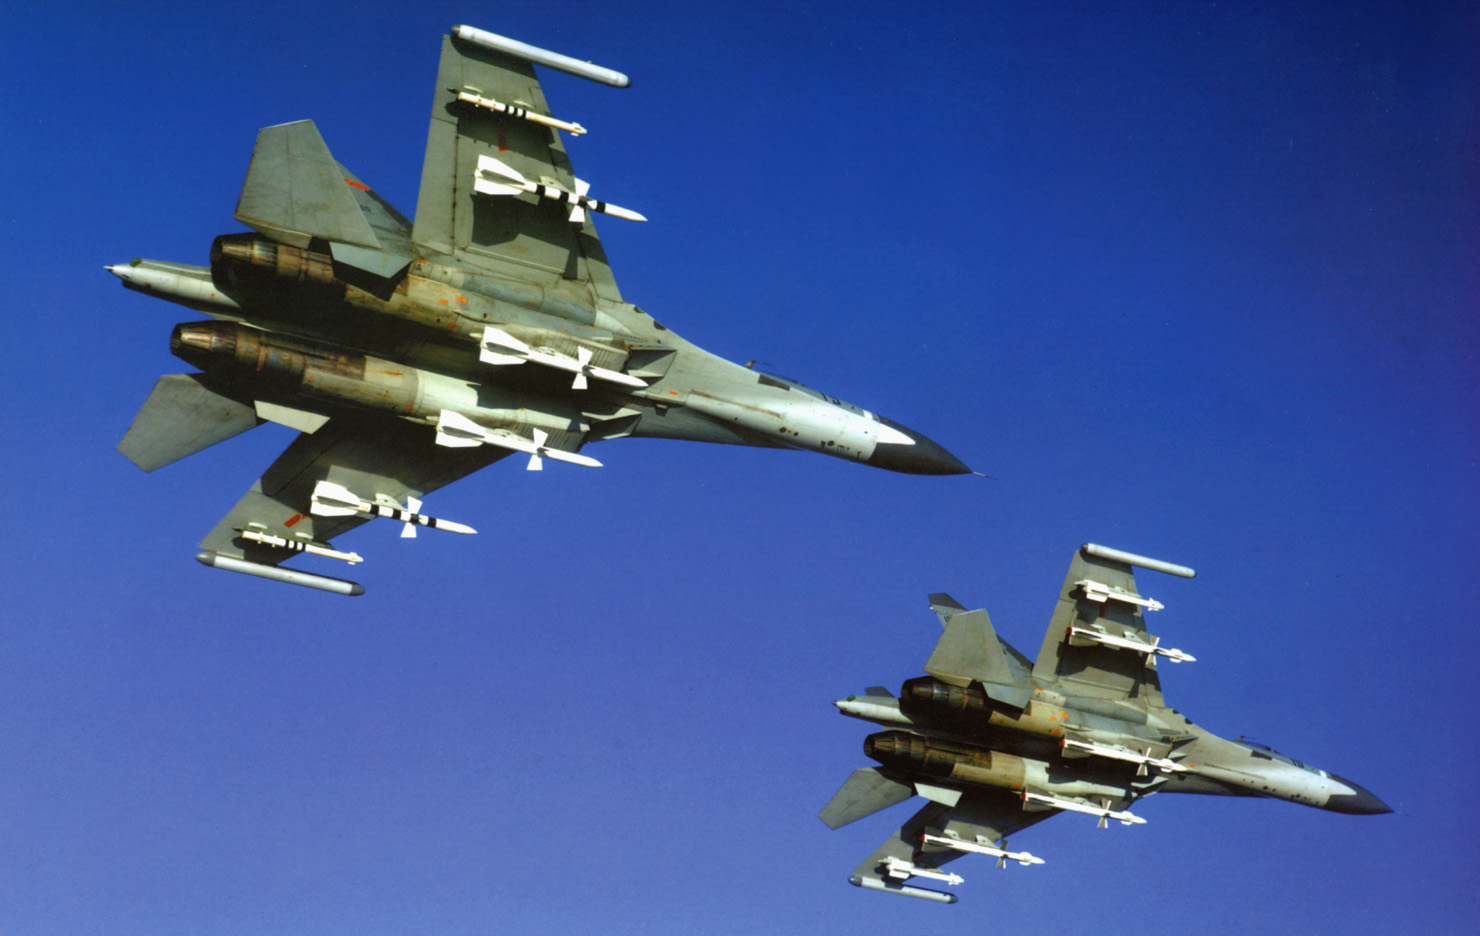 عائلة الفلانكر تقذف و تحقق السيطرة الجوية في السماء Su-27_aam_1